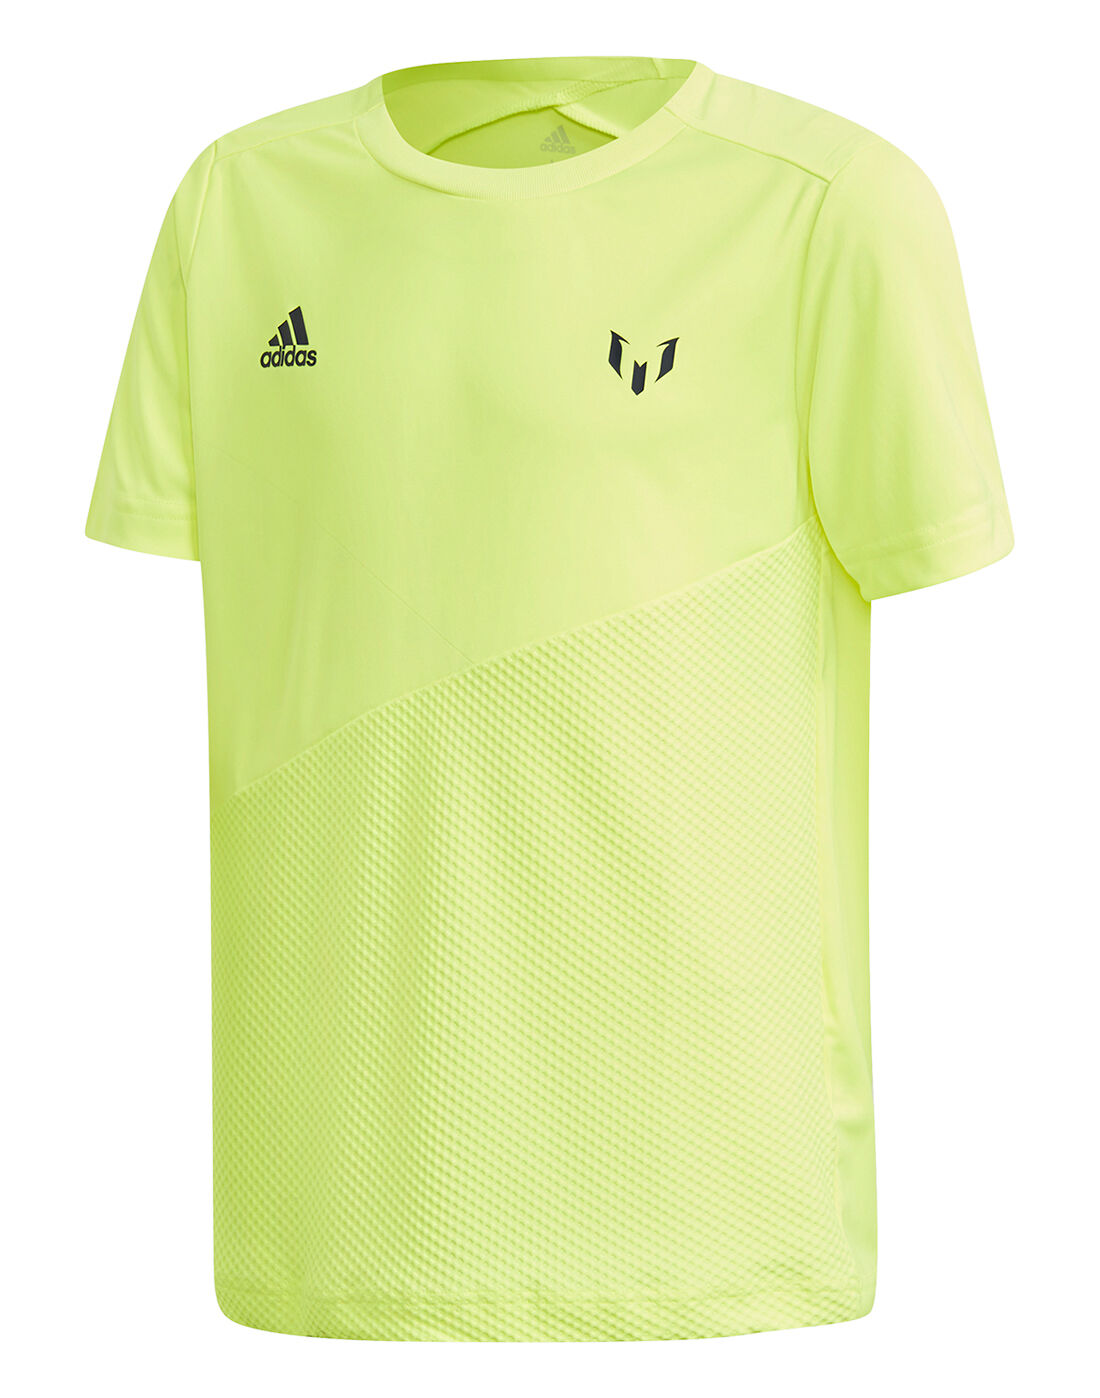 Kid's Neon Yellow adidas Messi Shirt 